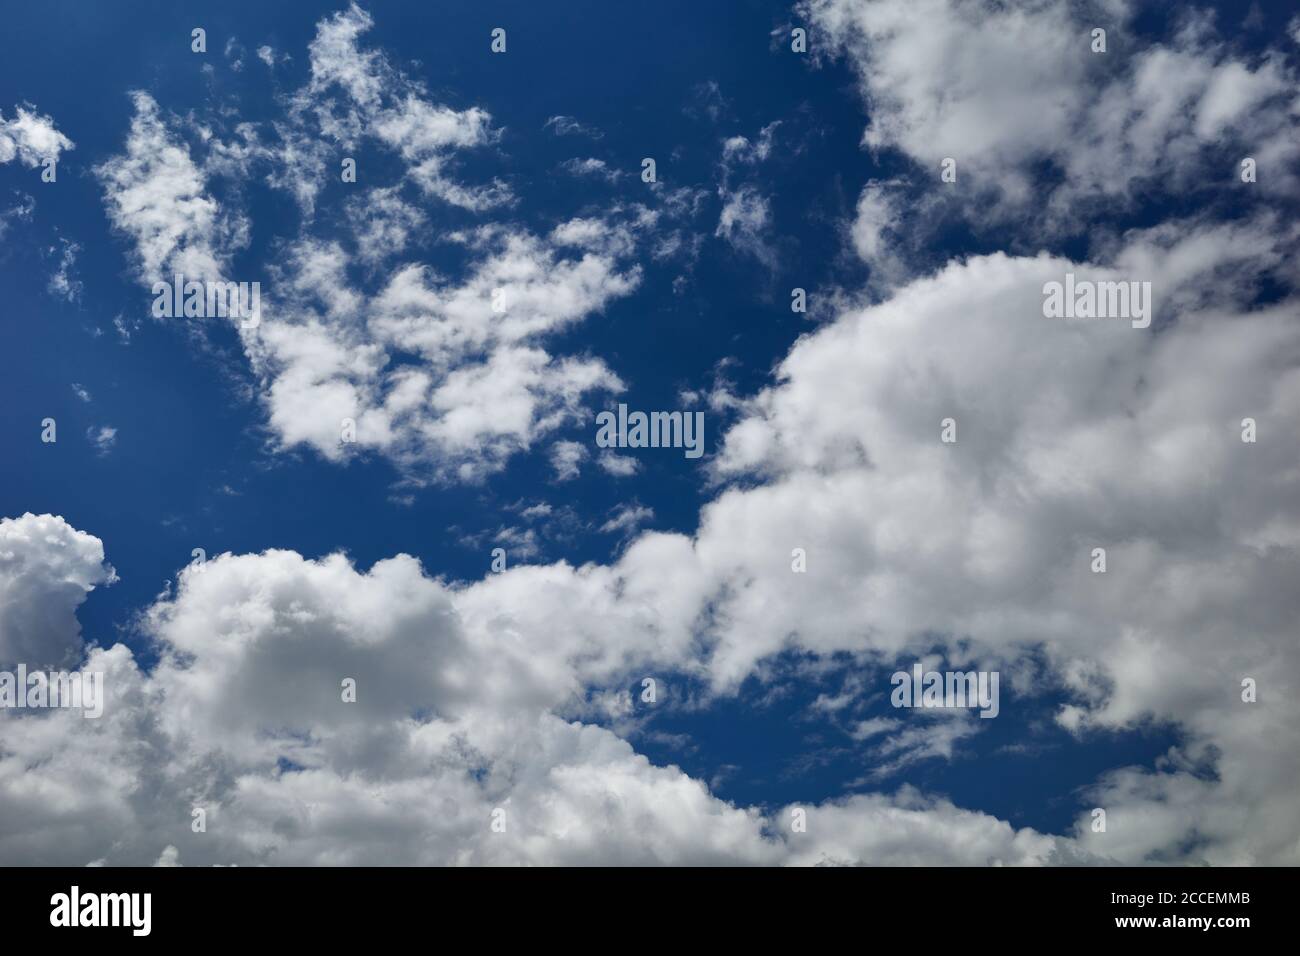 Himmlische Pracht eines schönen bewölkten Tages. Feld von geschwollenen Kumuluswolken im blauen Himmel. Hintergrund für Vorhersage und Meteorologie Illustration. Stockfoto